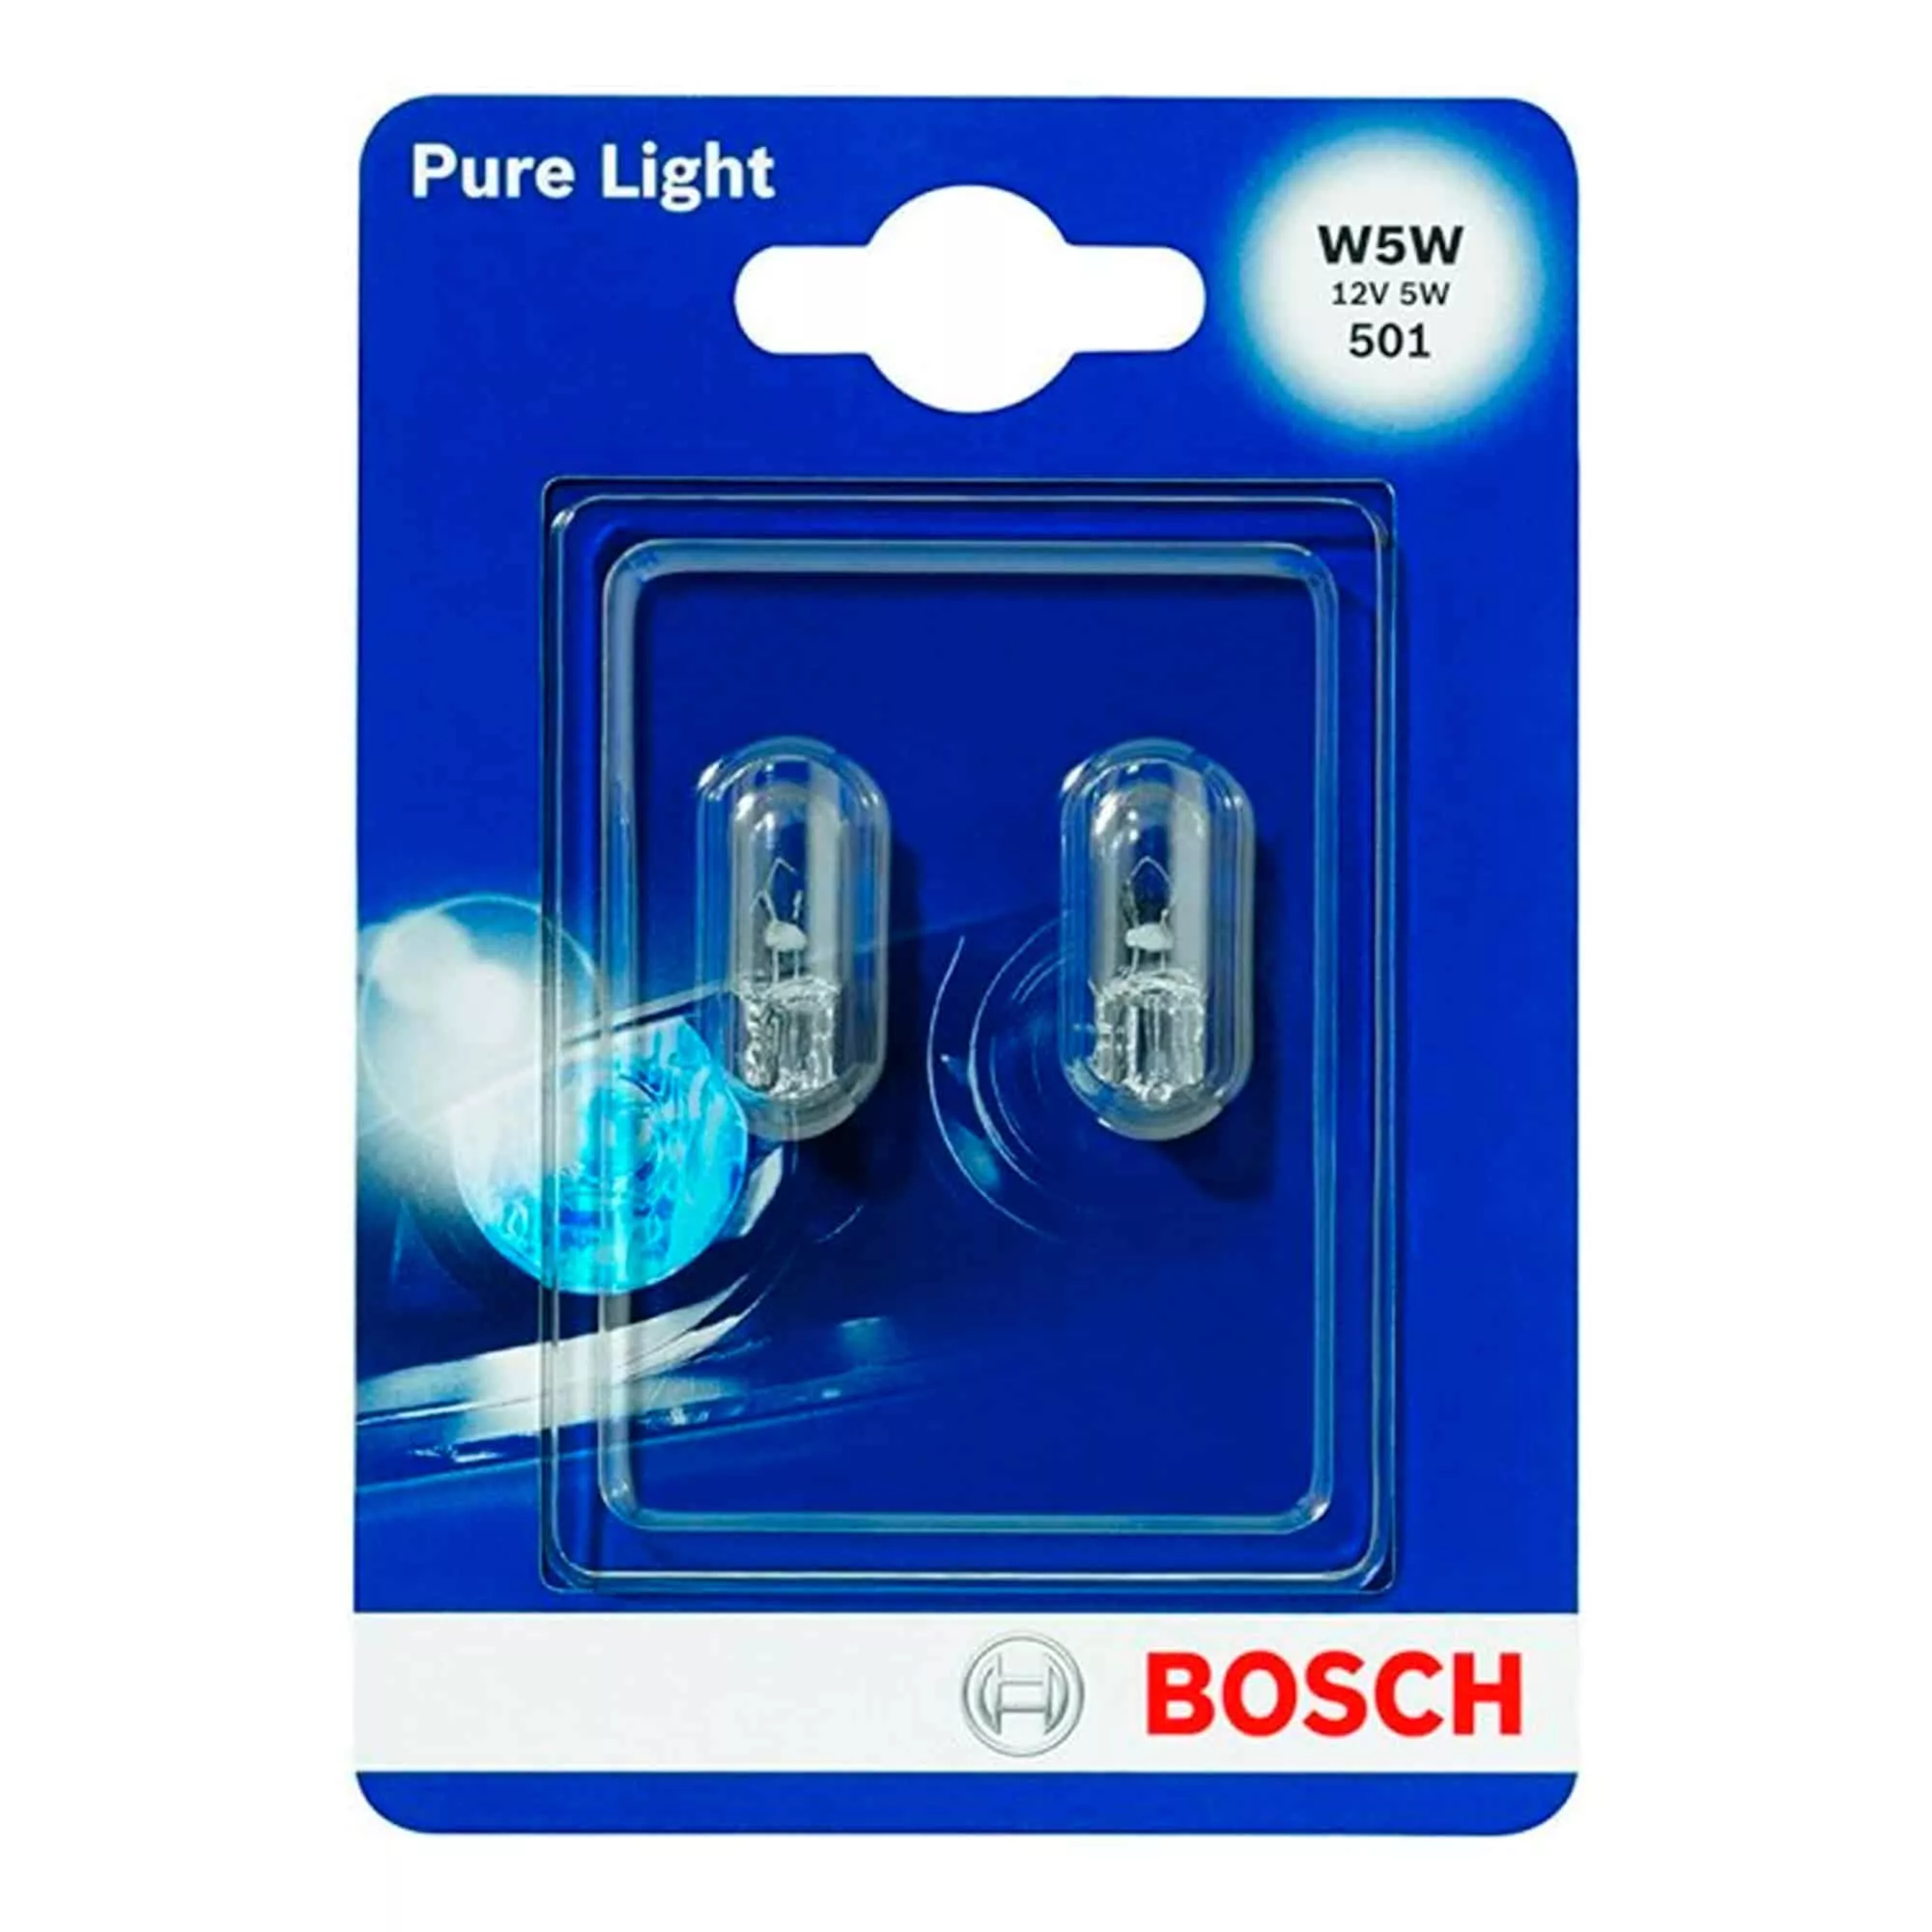 Лампа Bosch Pure Light W5W 12V 5W 1 987 301 026